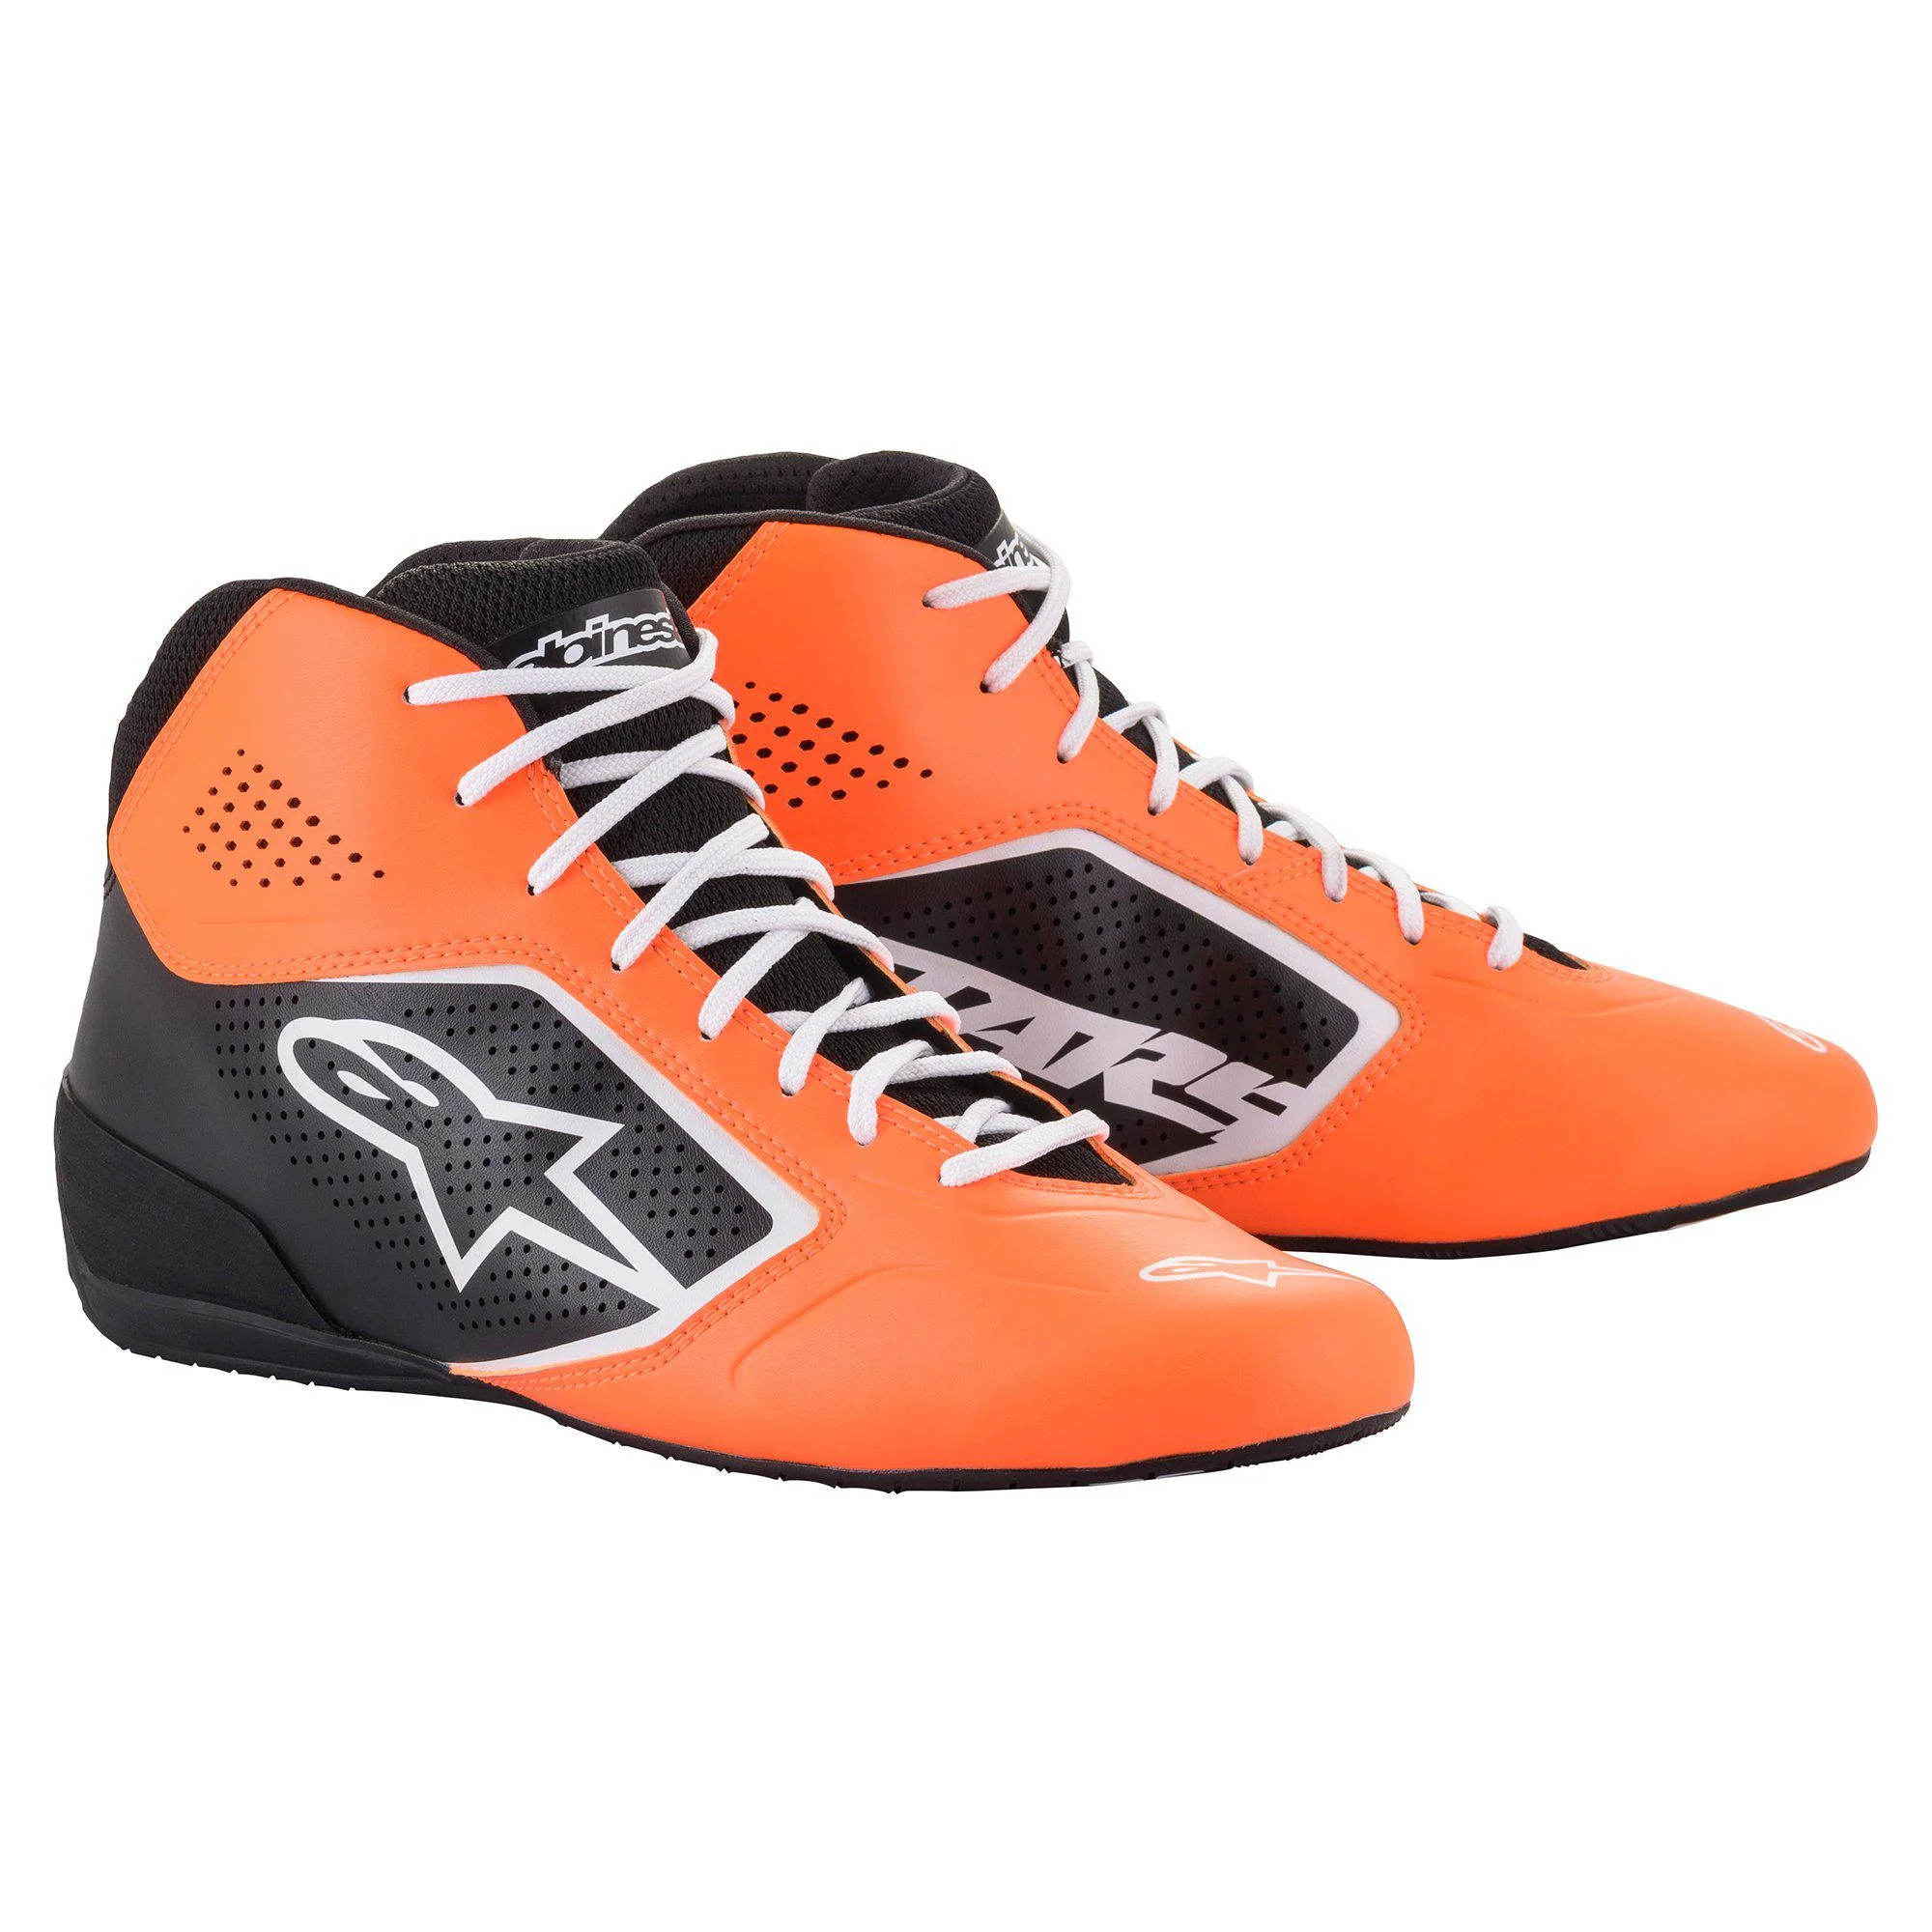 Alpinestars TECH-1 K START v2 ботинки для картинга, оранжевый/черный/белый, р-р 39(EUR)/7(US)/6(UK. DARK-STOCK.RU